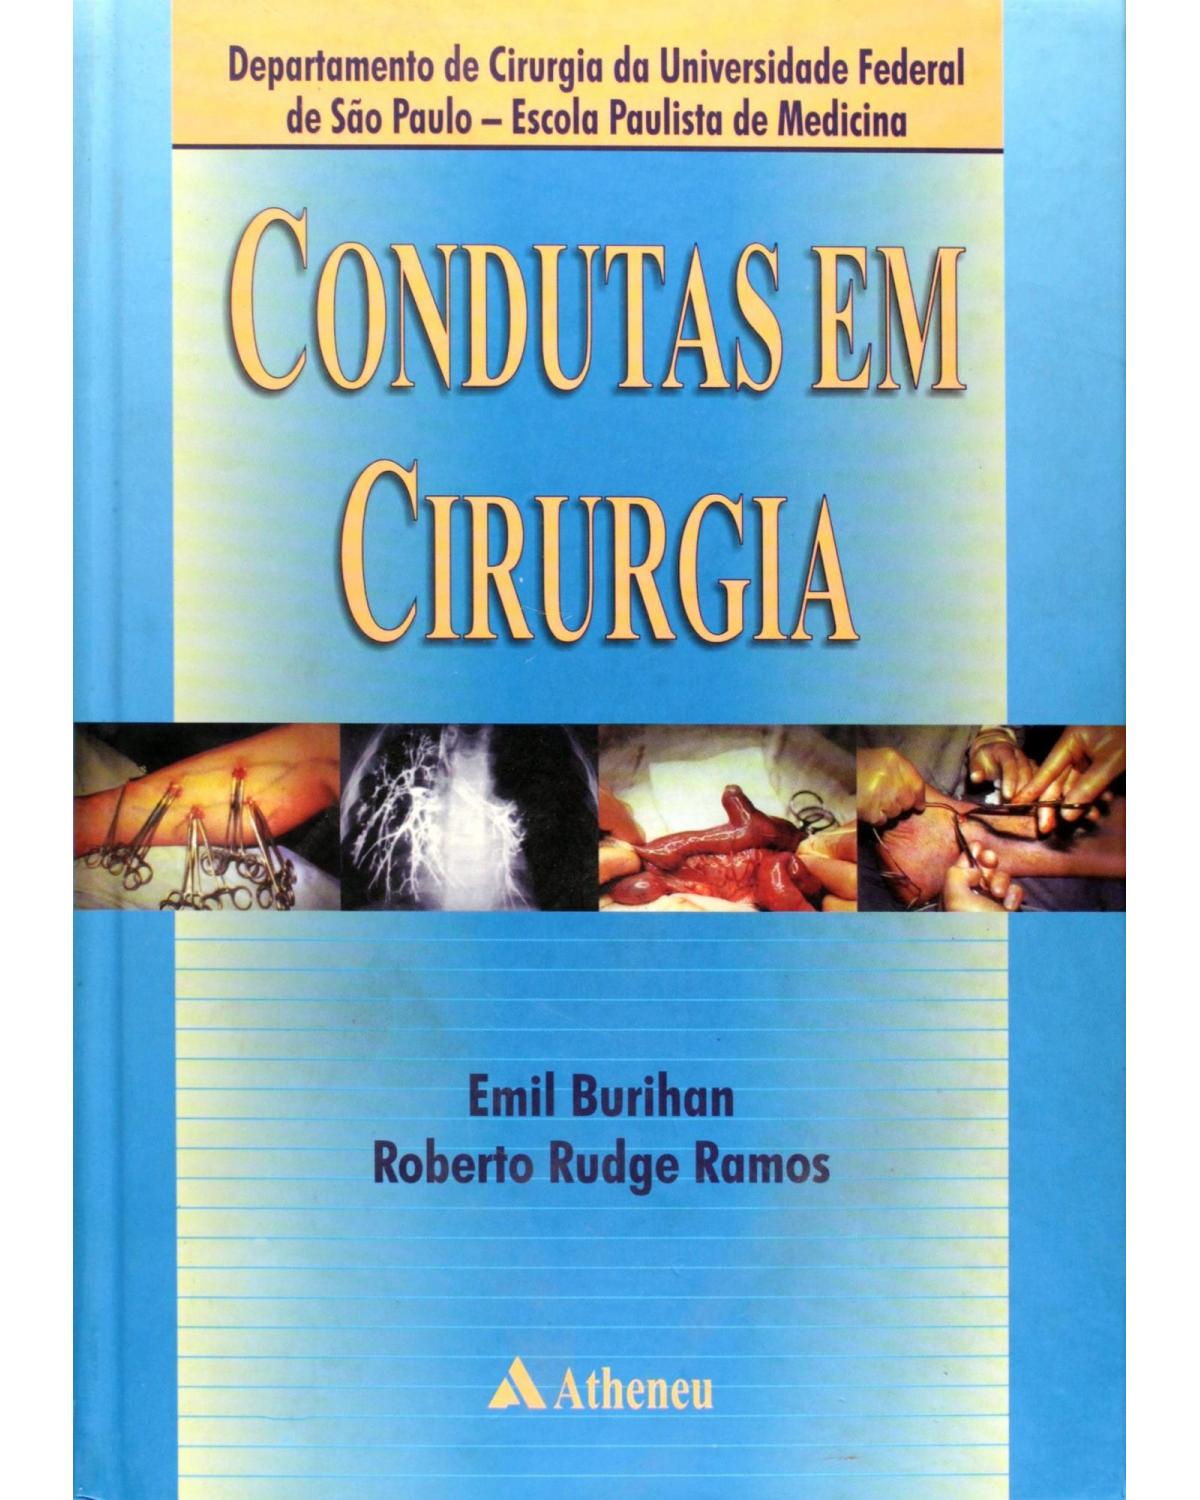 Condutas em cirurgia - 1ª Edição | 2001